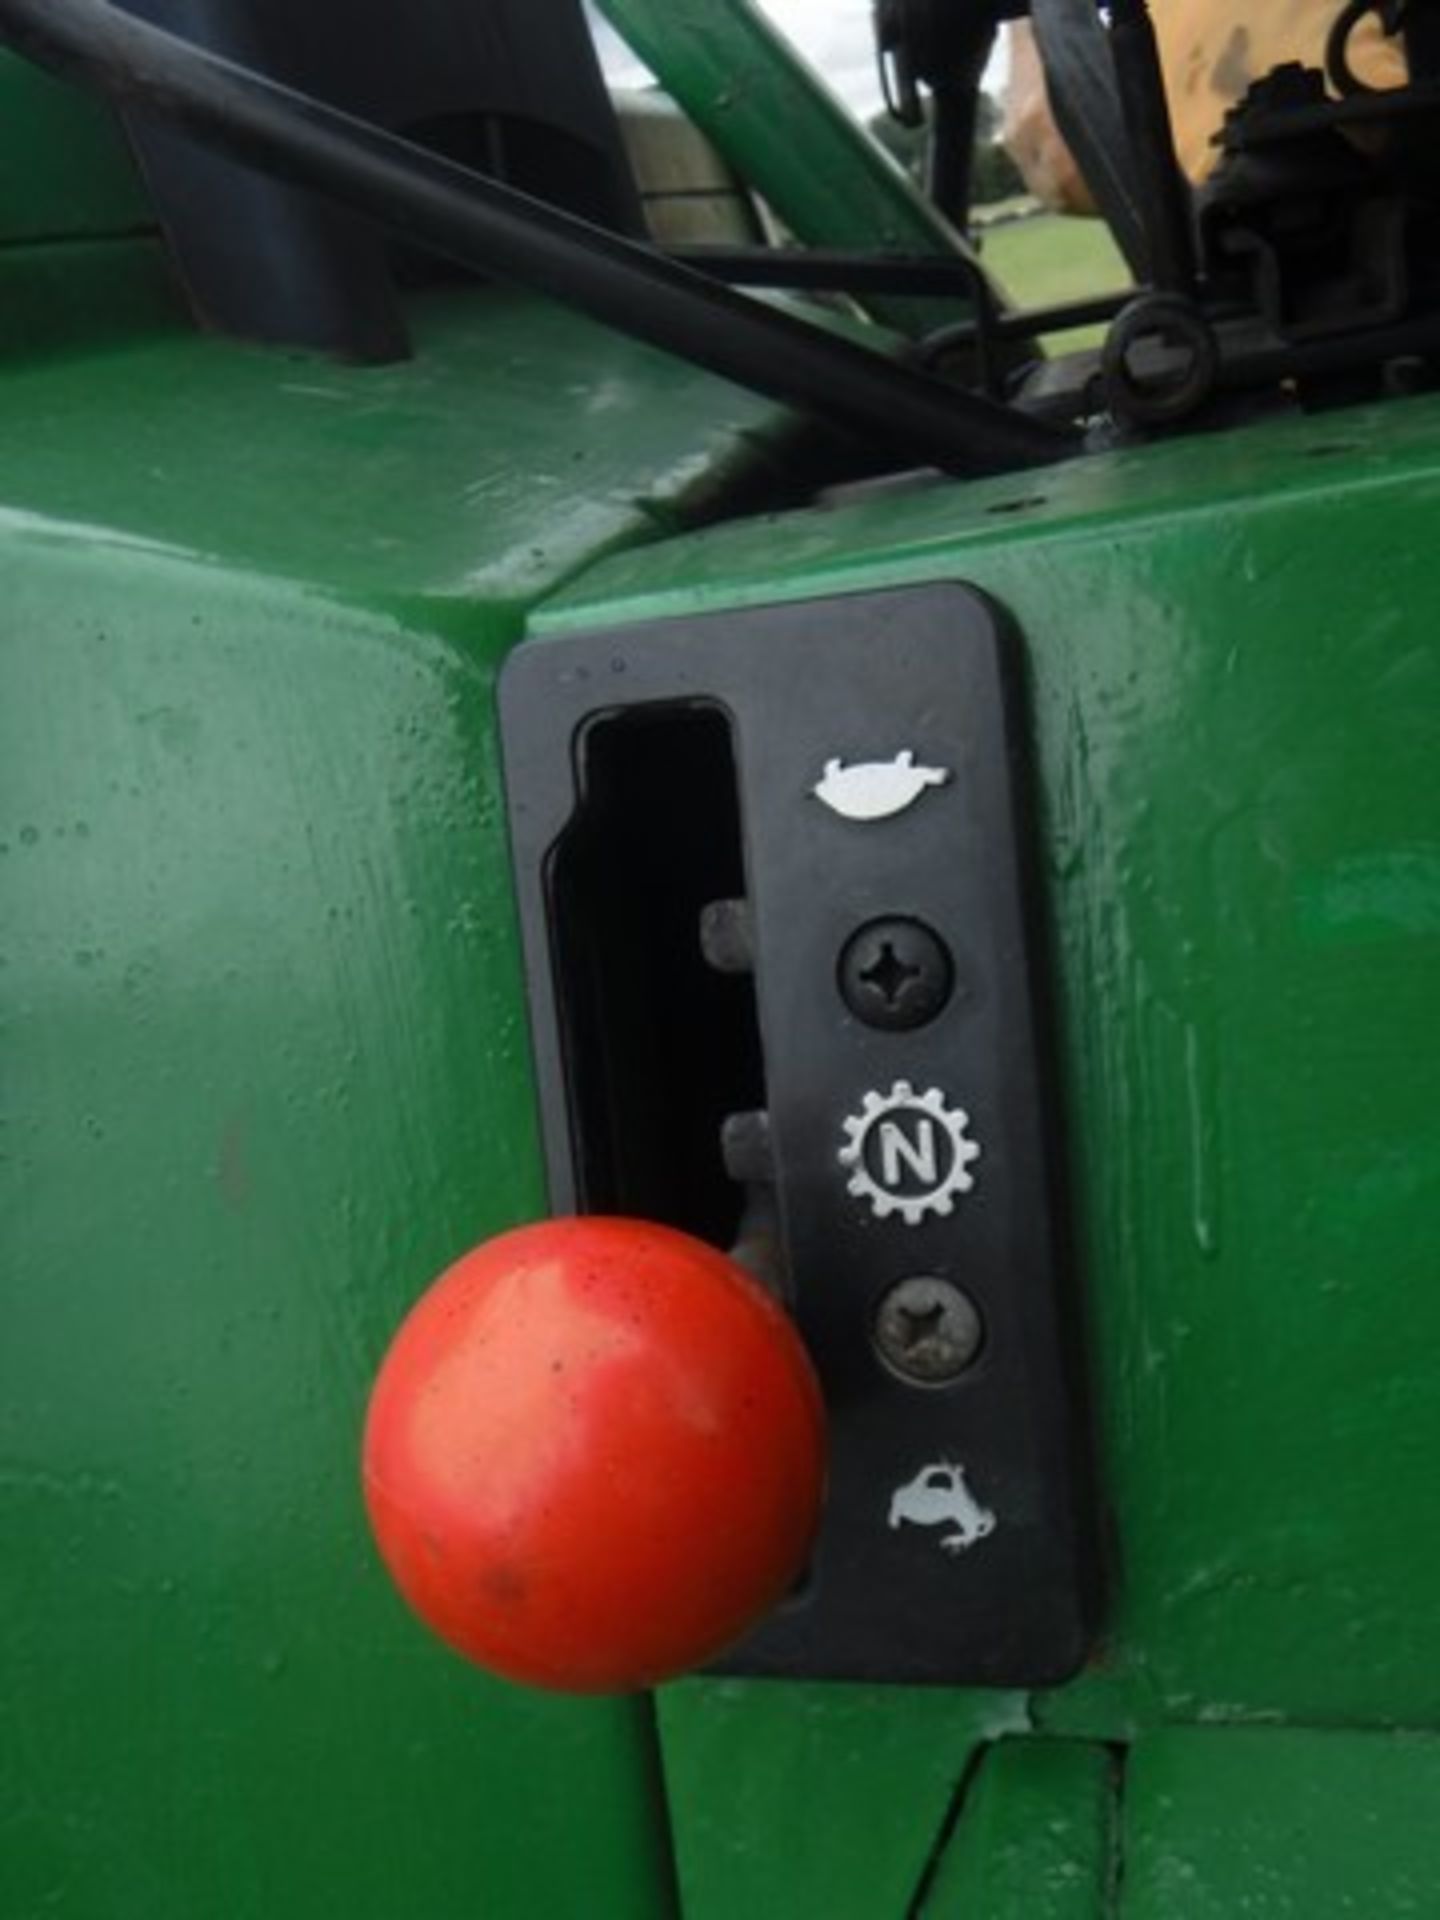 JOHN DEERE 4 x 4 Tractor 755. Reg - H97FBJ. 1003hrs (not verified) - Image 5 of 15